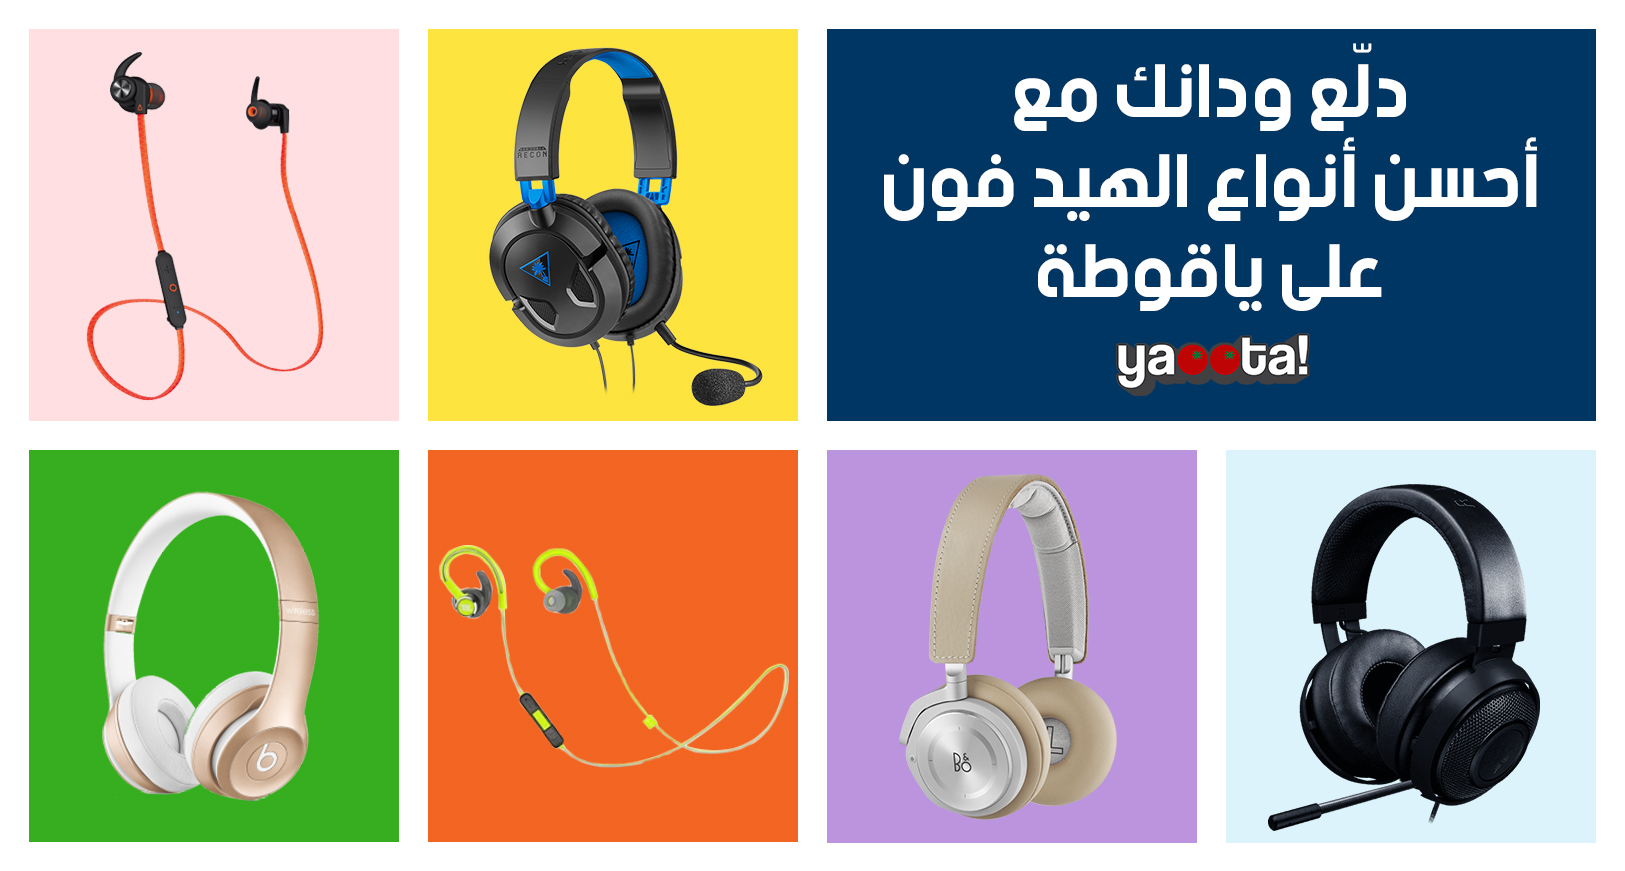 اتعرف على أفضل سماعات الهيدفون الرياضية أو الخاصة بالألعاب أو عشاق  الموسيقىOnline Shopping Egypt | Yaoota! Magazine